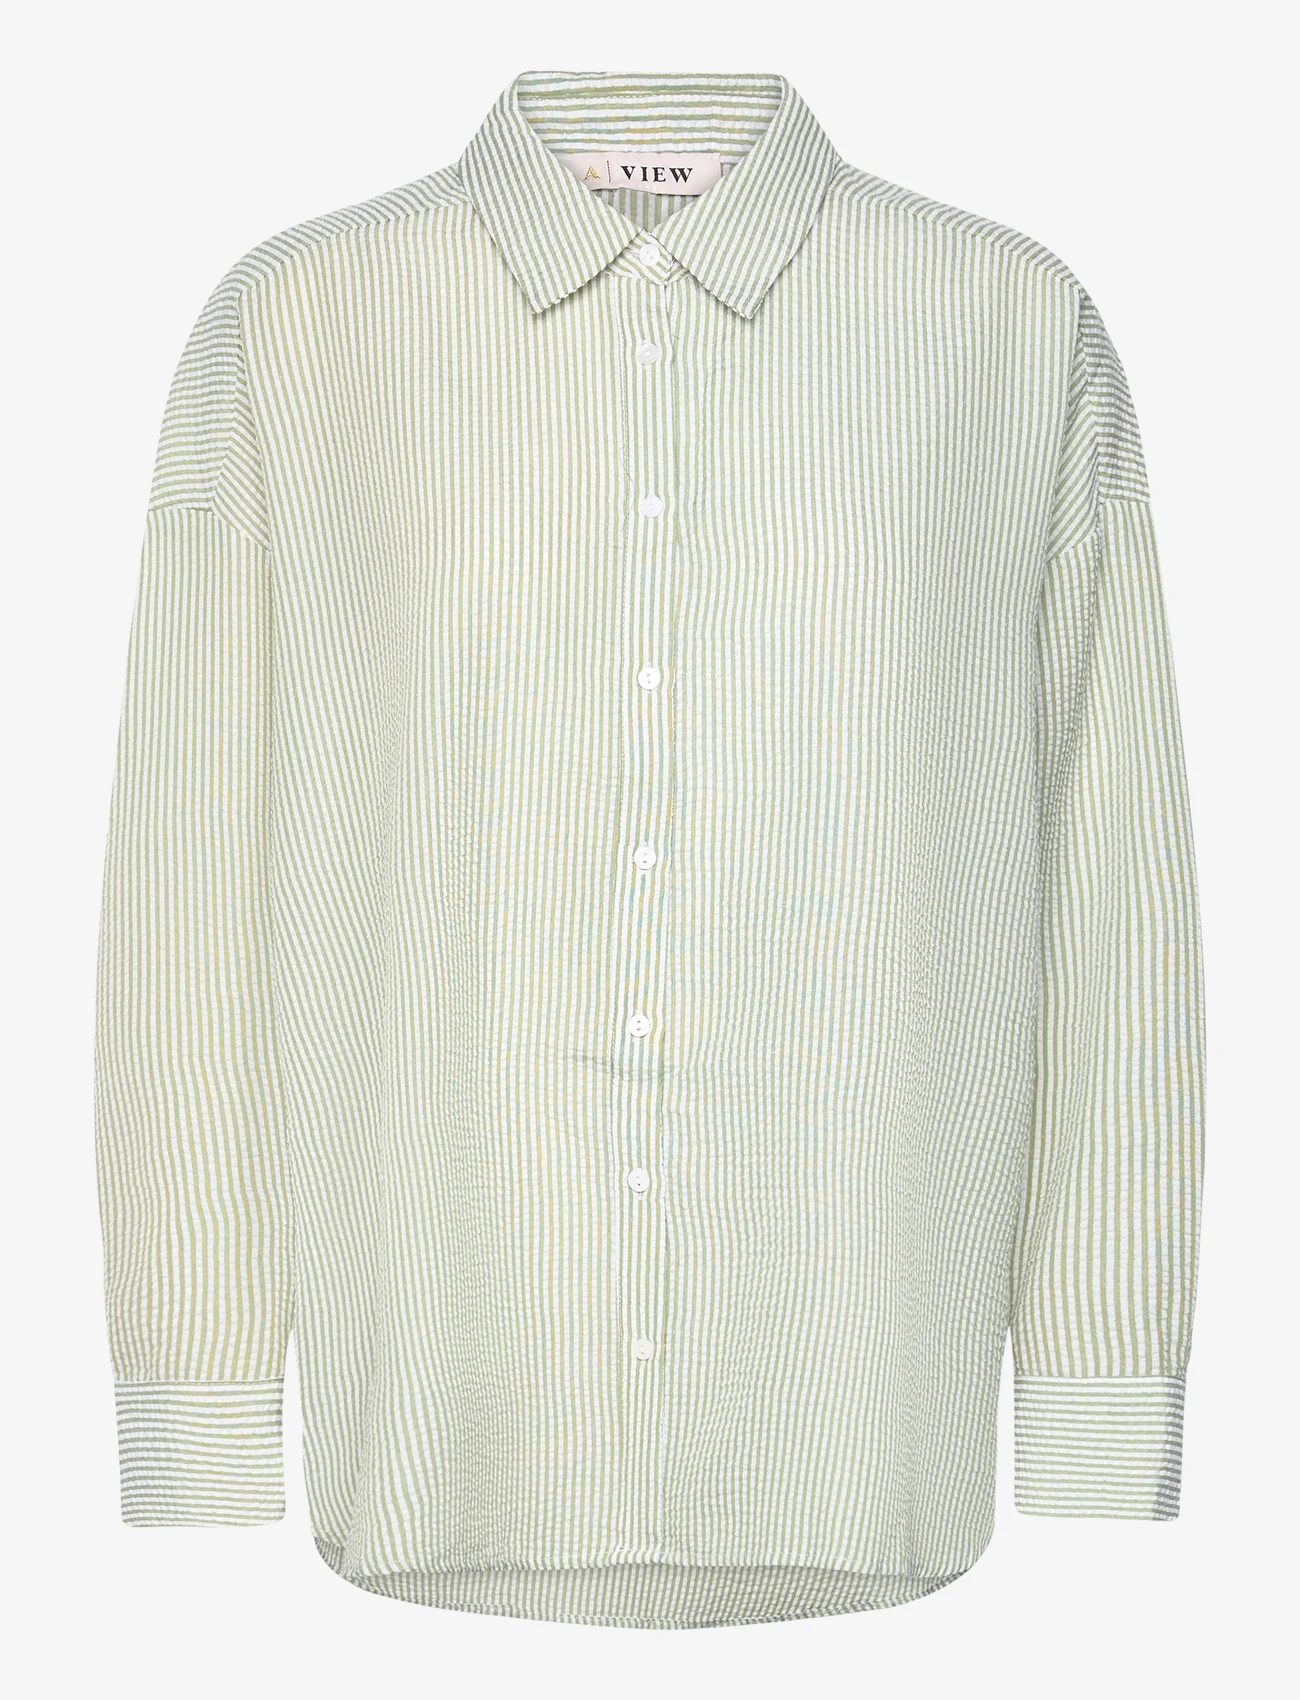 A-View - Sonja shirt - marškiniai ilgomis rankovėmis - white/green - 0